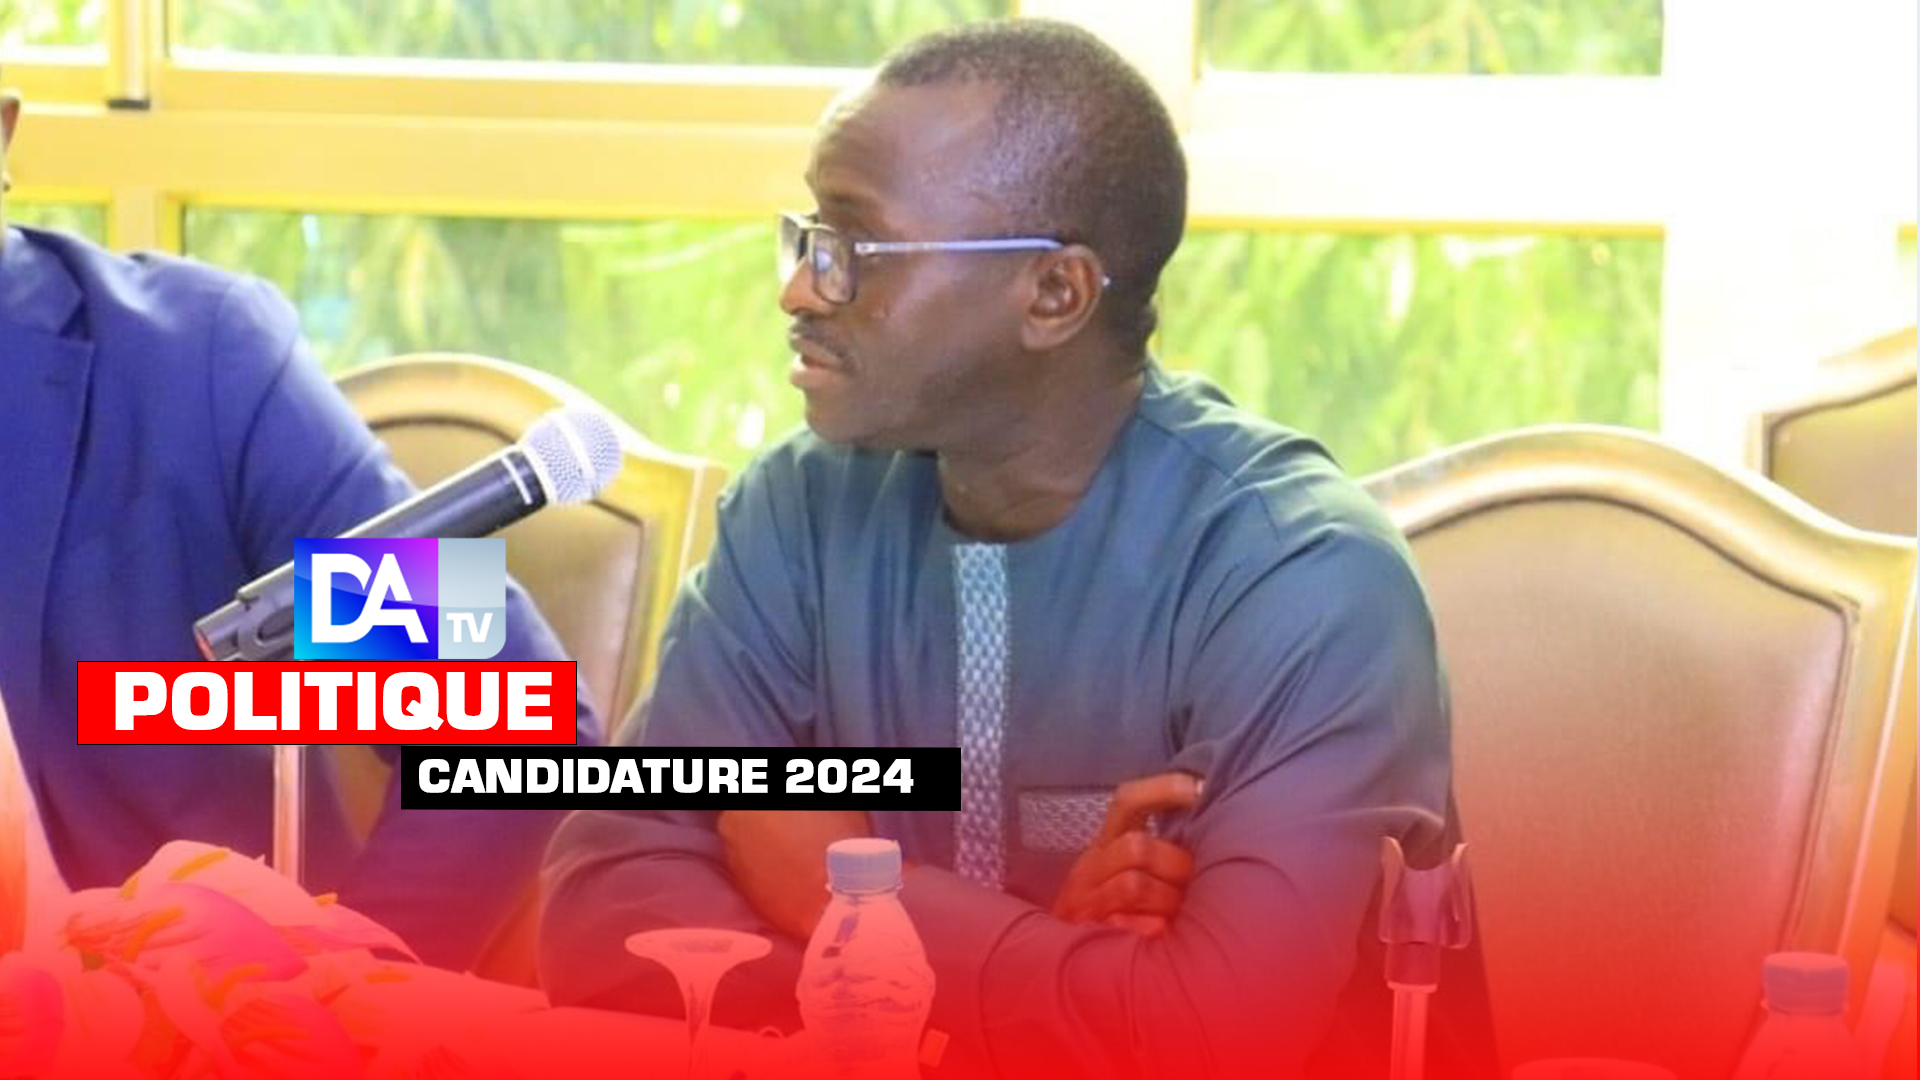 Prise de position sur la candidature de Macky Sall en 2024 : Le groupe de réflexion de l'AFP désavoue le ministre Pape Sagna Mbaye